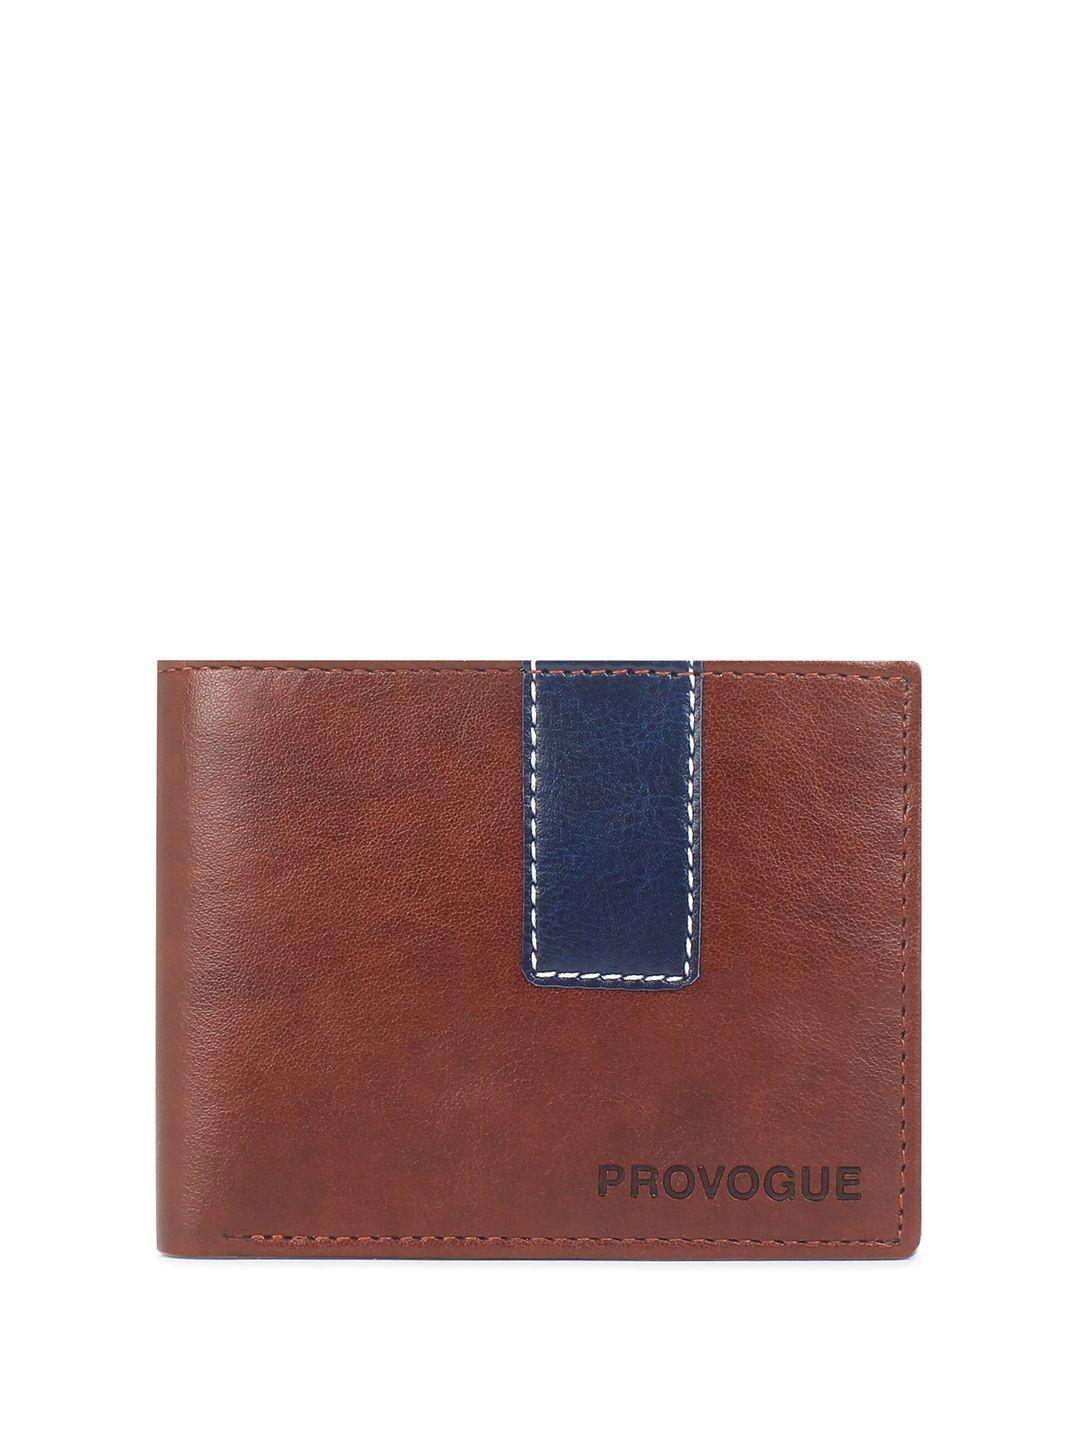 provogue men two fold wallet